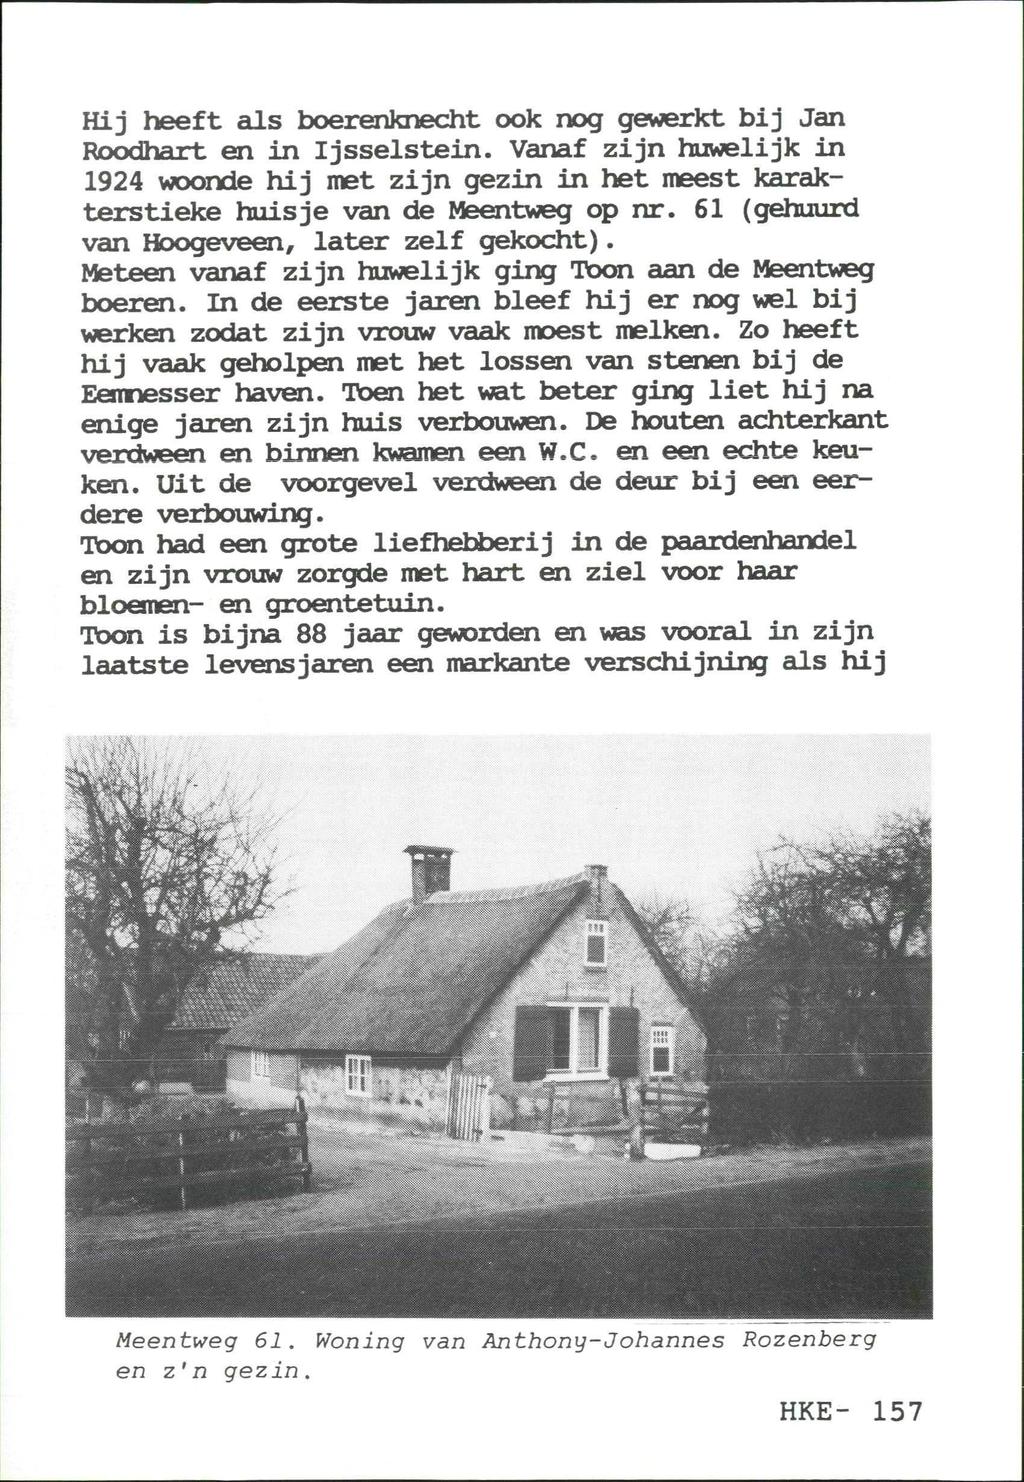 Hij heeft als boerenknecht ook nog gewerkt bij Jan Roodhart en in Ijsselstein. Vanaf zijn huwelijk in 1924 woonde hij met zijn gezin in het meest karakterstieke huisje van de Meentweg op nr.